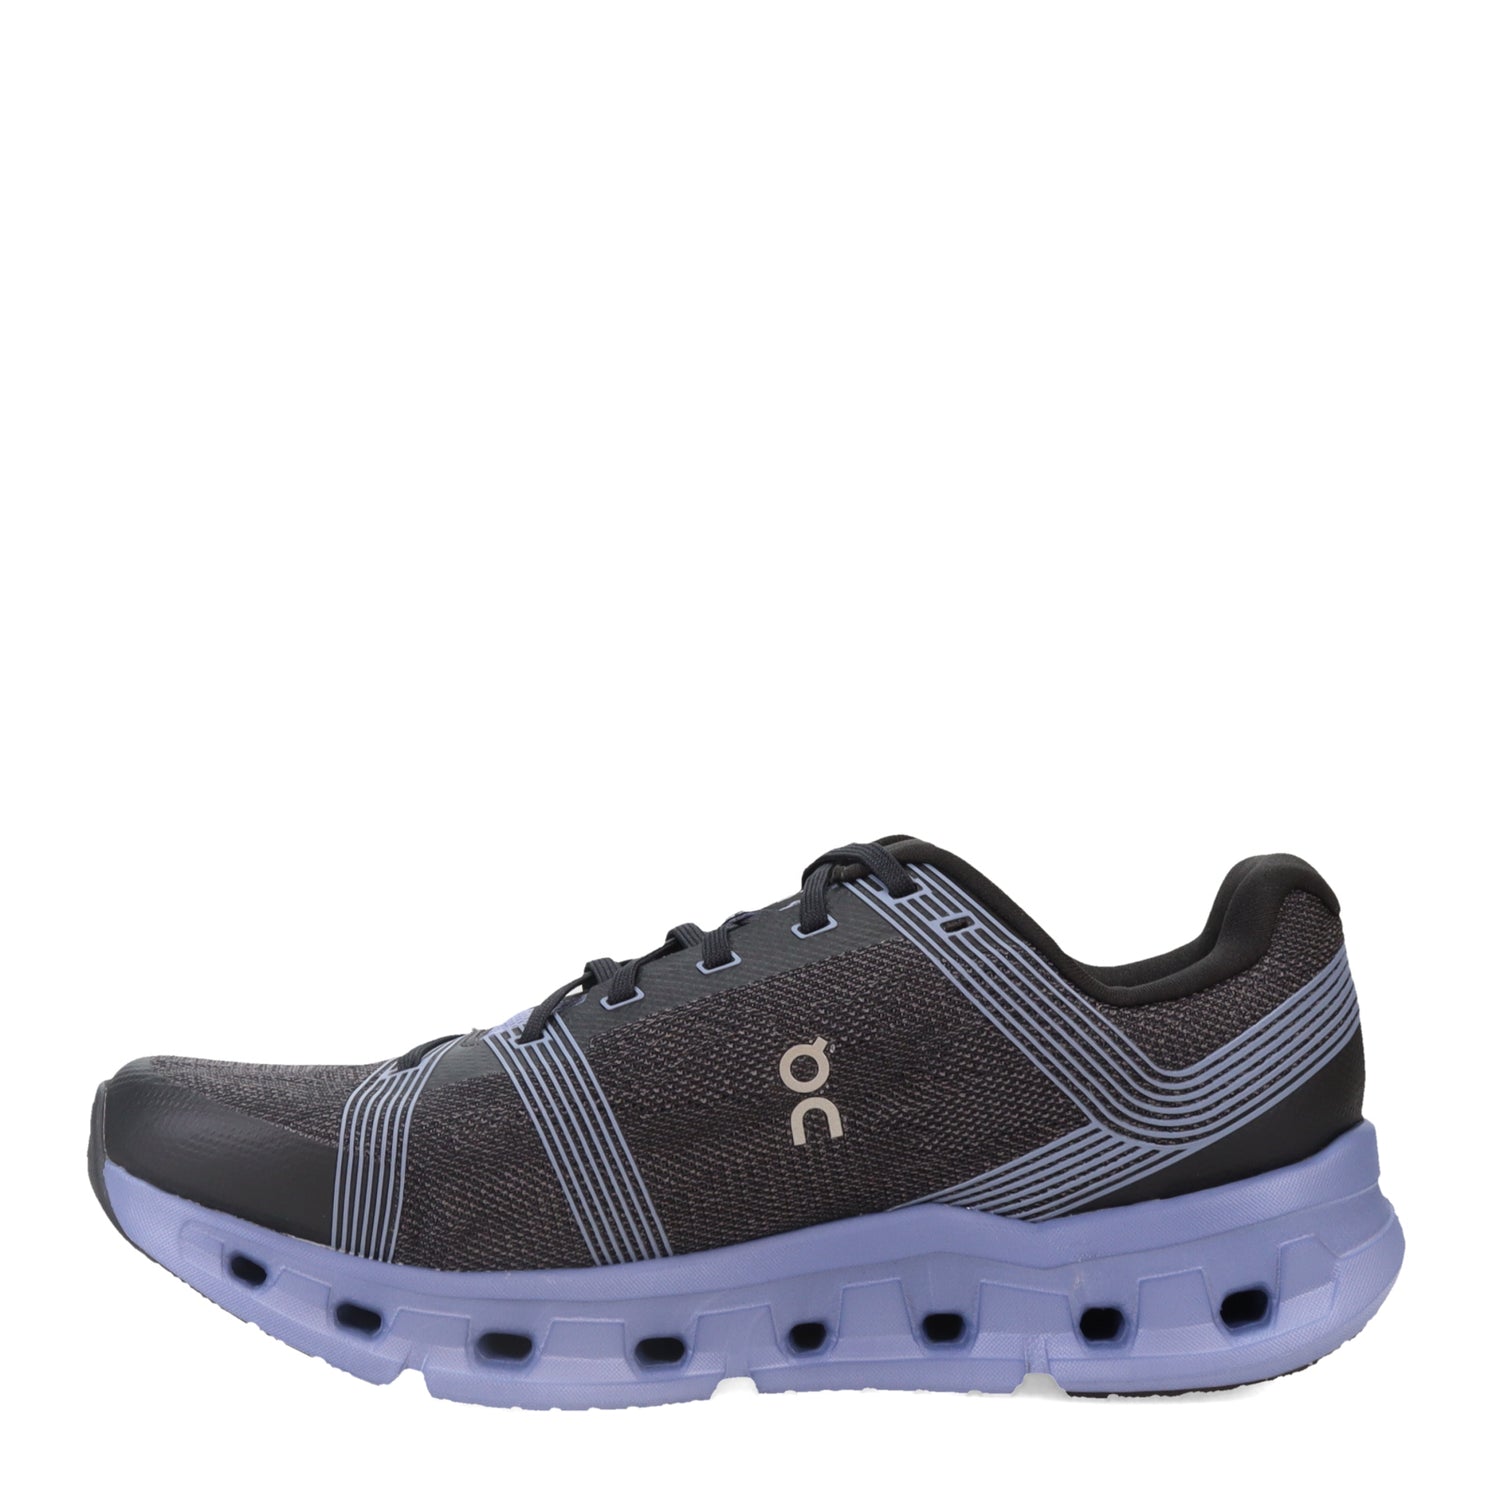 Peltz Shoes  Men's On Running Cloudgo Running Shoe - Wide Width BLACK/SHALE 65.98231